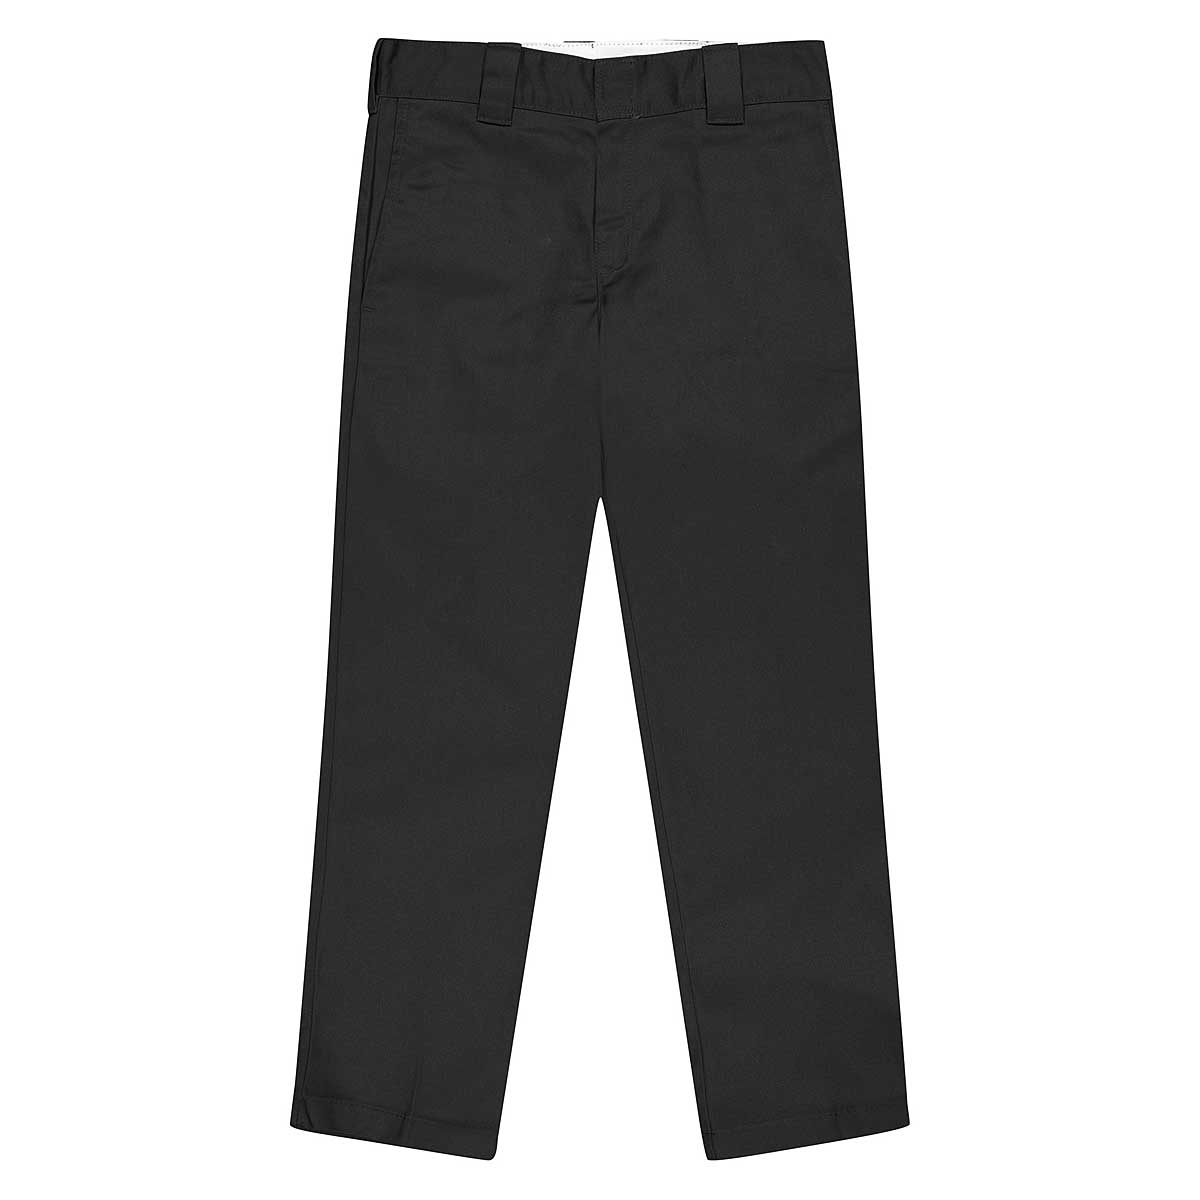 Dickies 873 Work Pants, Black/Black